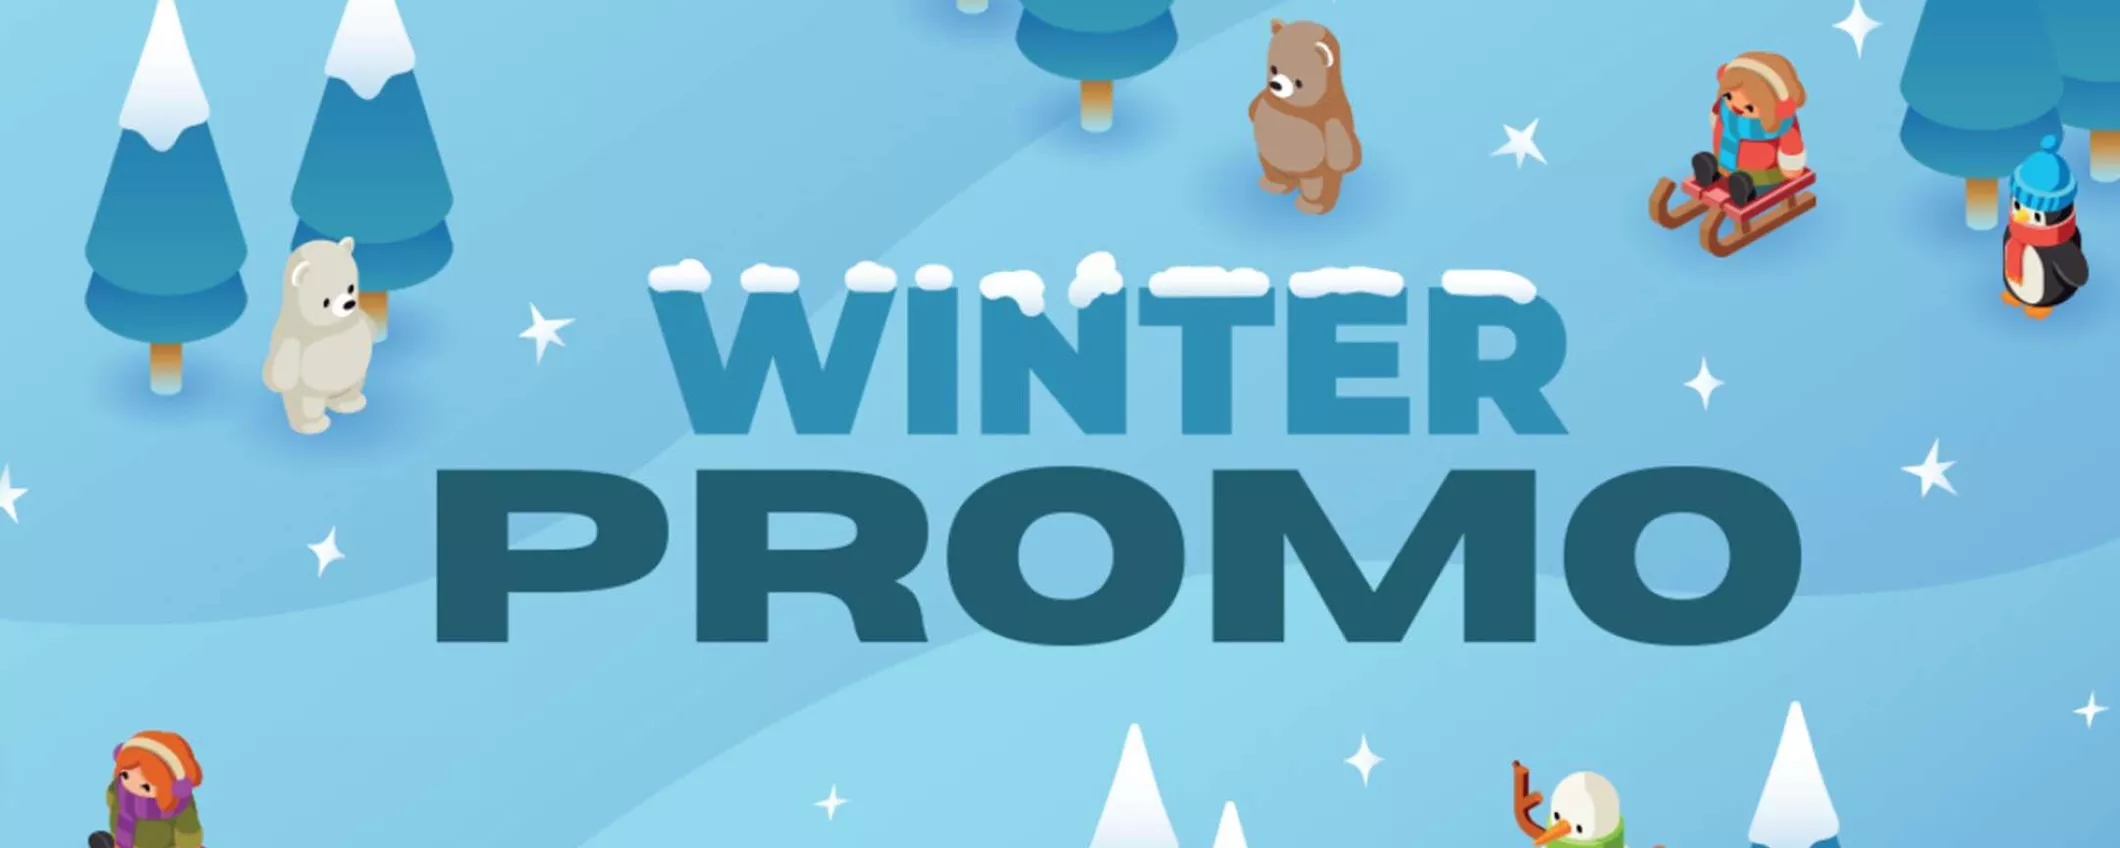 Da GameStop sono arrivate le Winter Promo: acquista 2 giochi, il meno caro lo paghi 5€